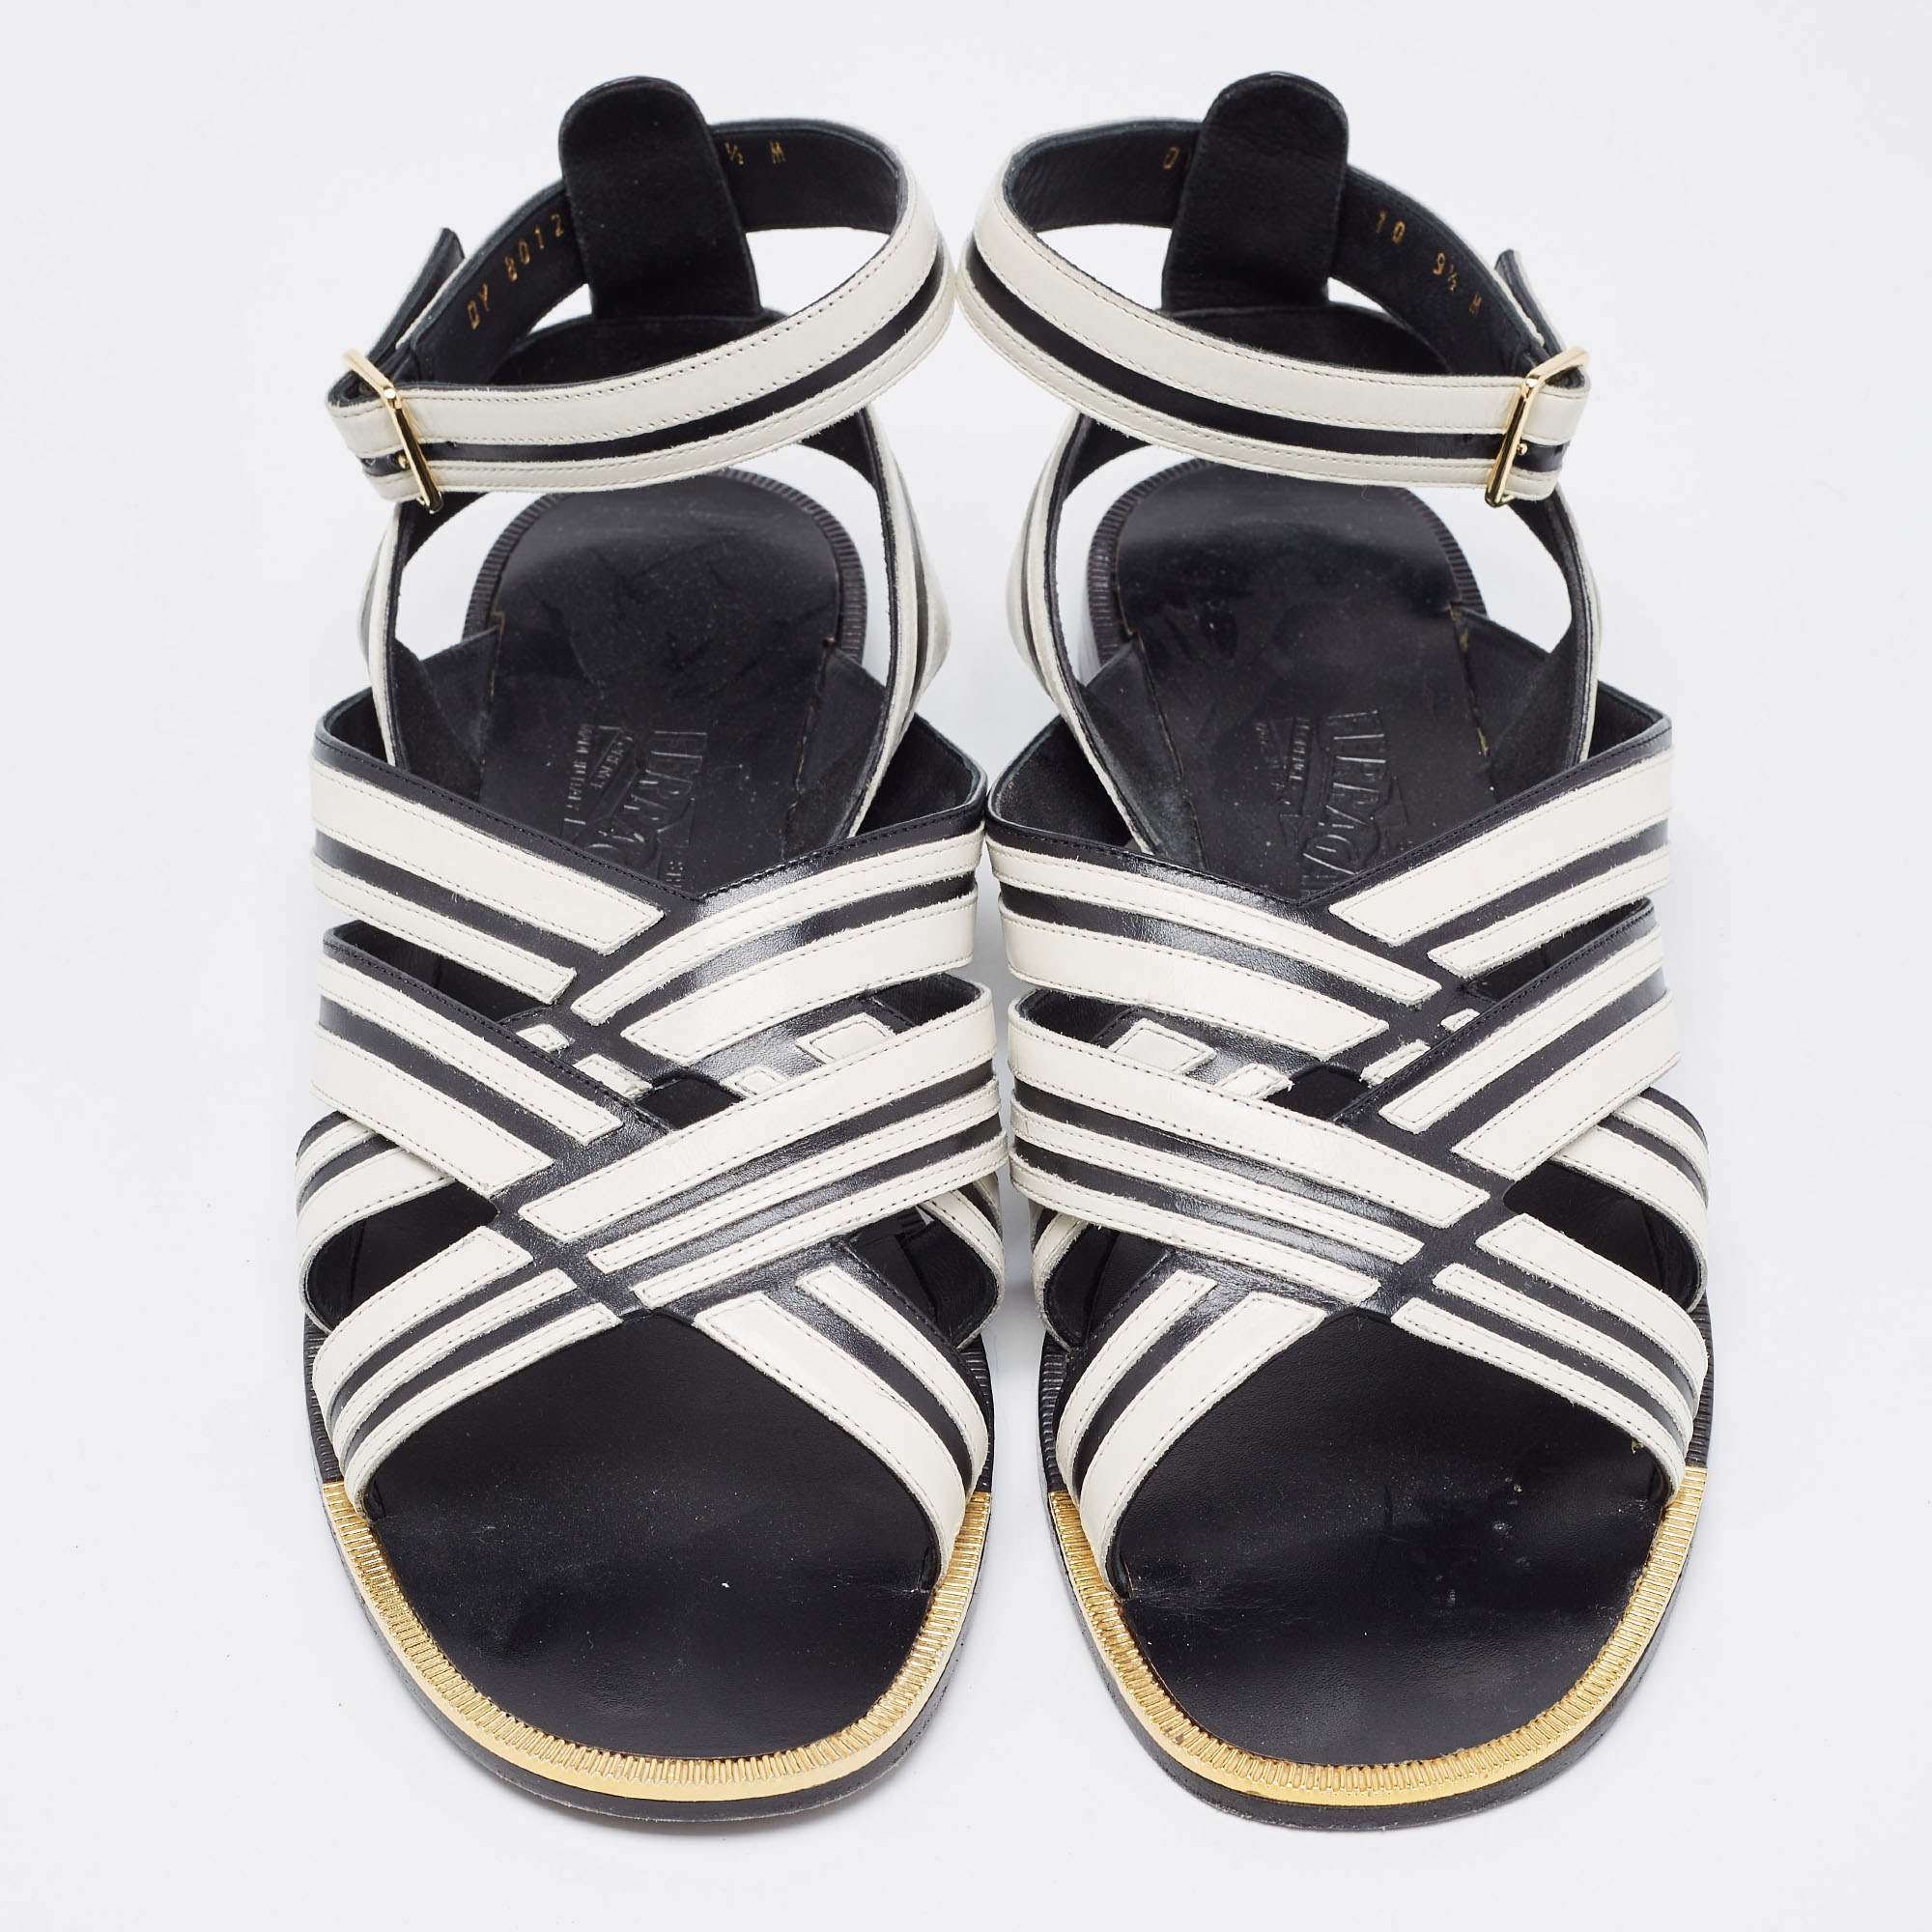 Salvatore Ferragamo Black/White Leather Ankle Strap Sandals Size 40